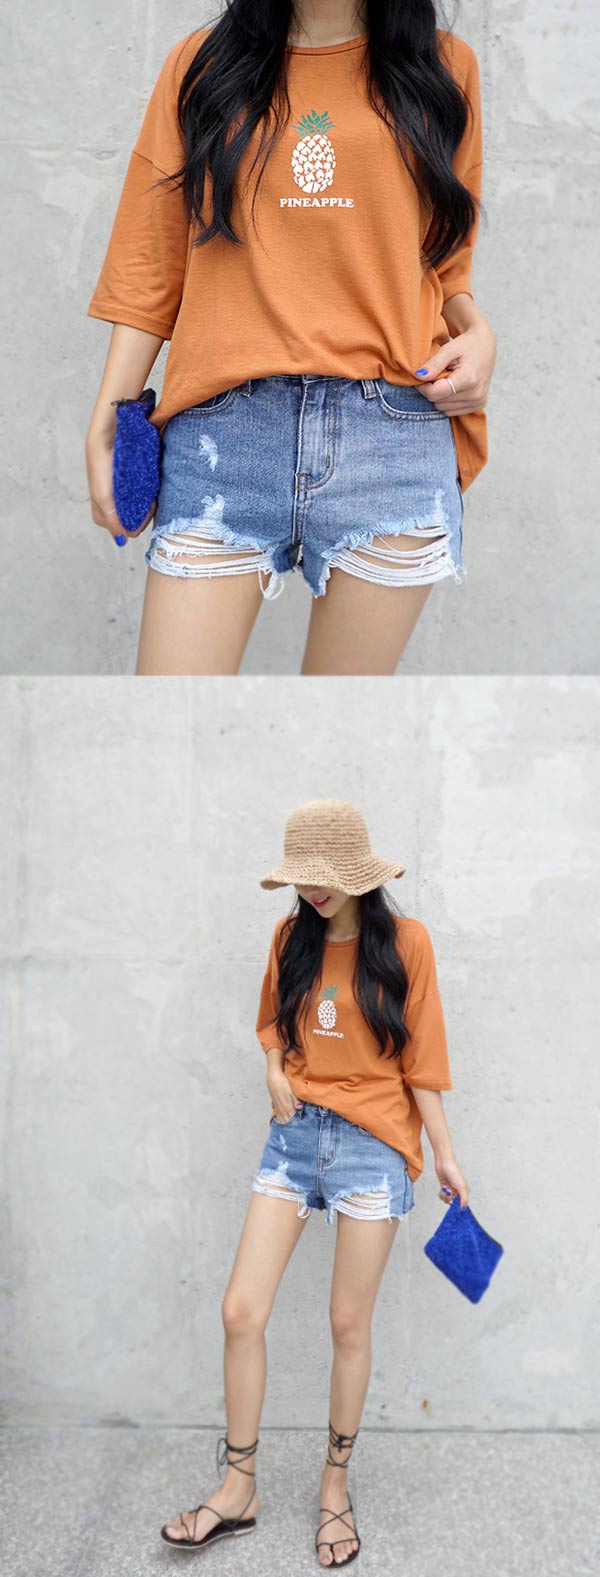 正韓 個性刷破抽鬚潮擺短褲-(藍色)100%Korea Jeans